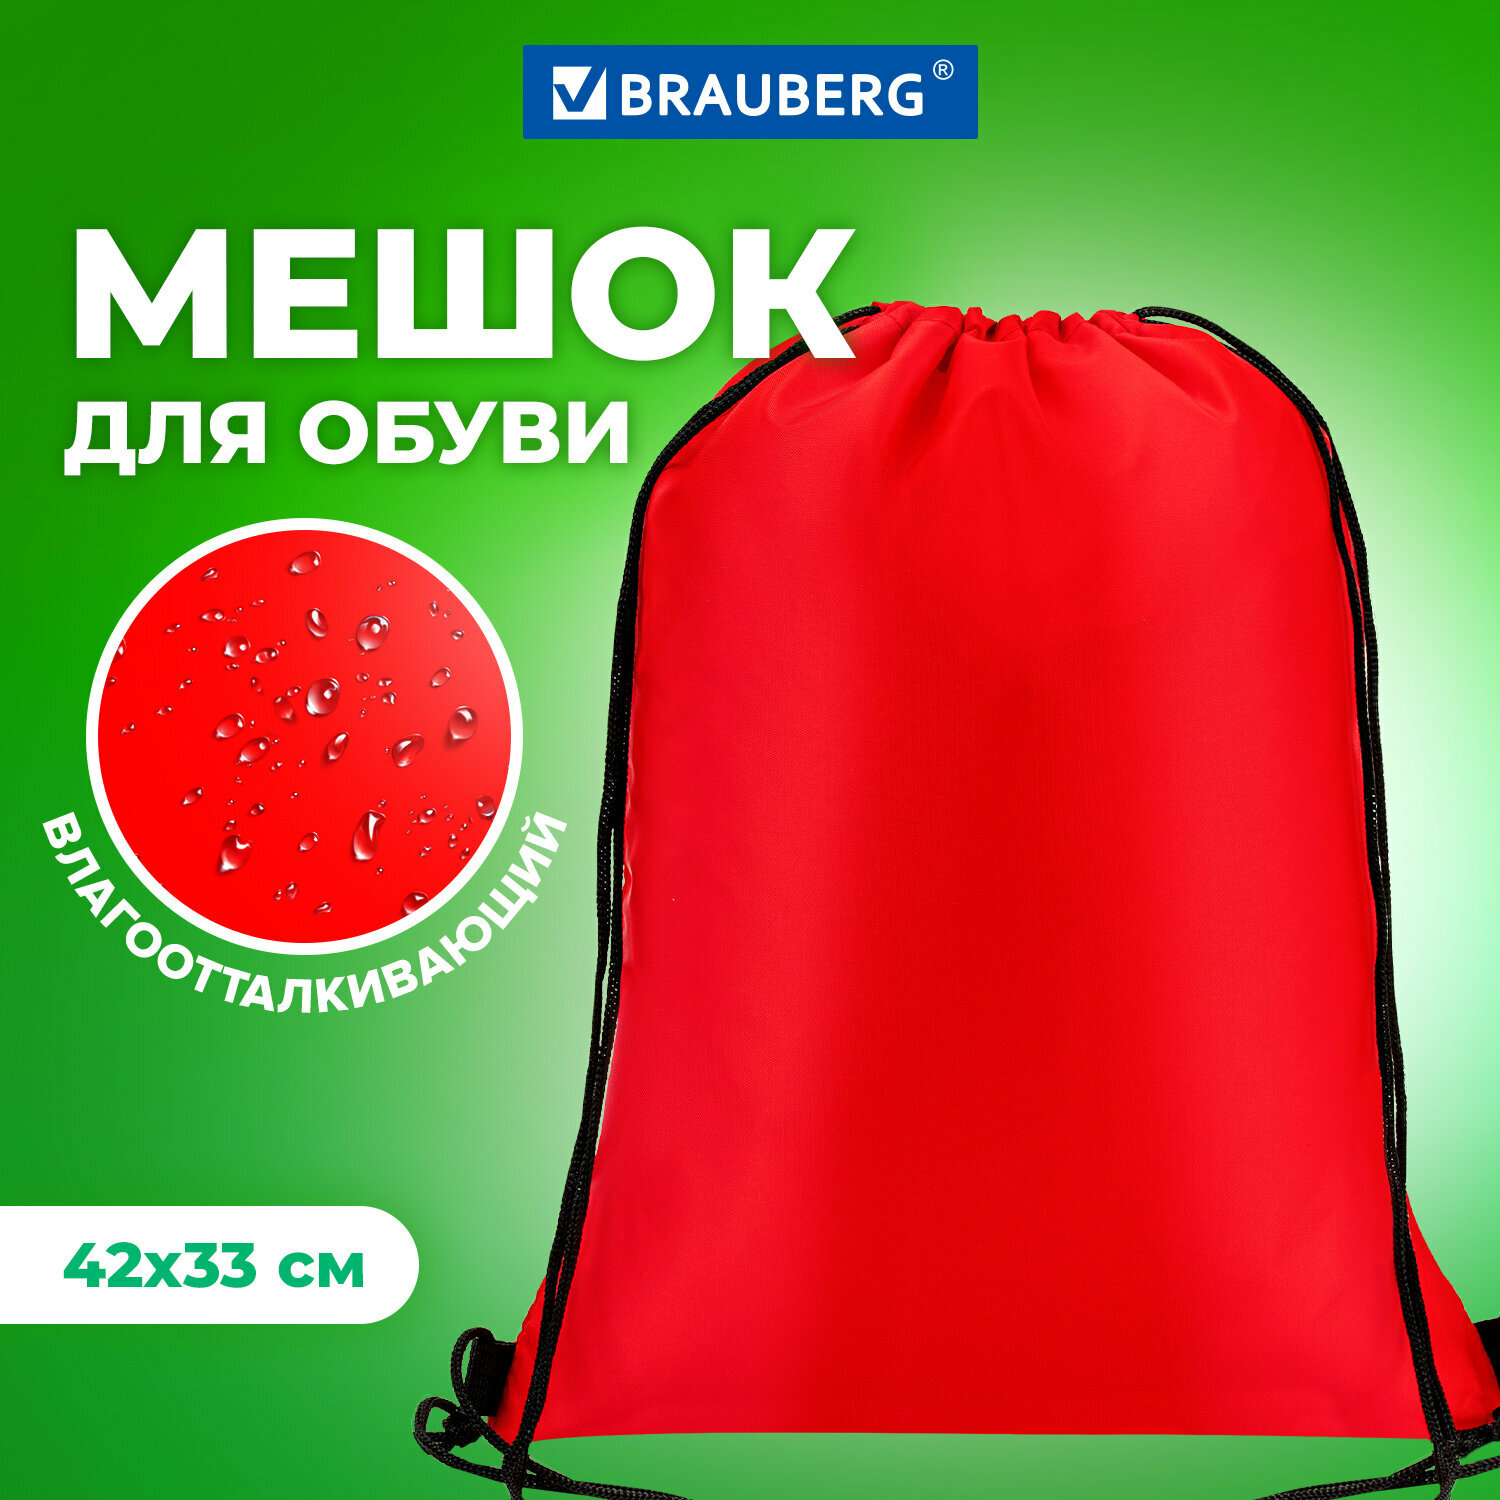 Сумка/мешок/рюкзак для сменной обуви (сменки) Brauberg, прочная, на шнурке, 42х33 см, красная